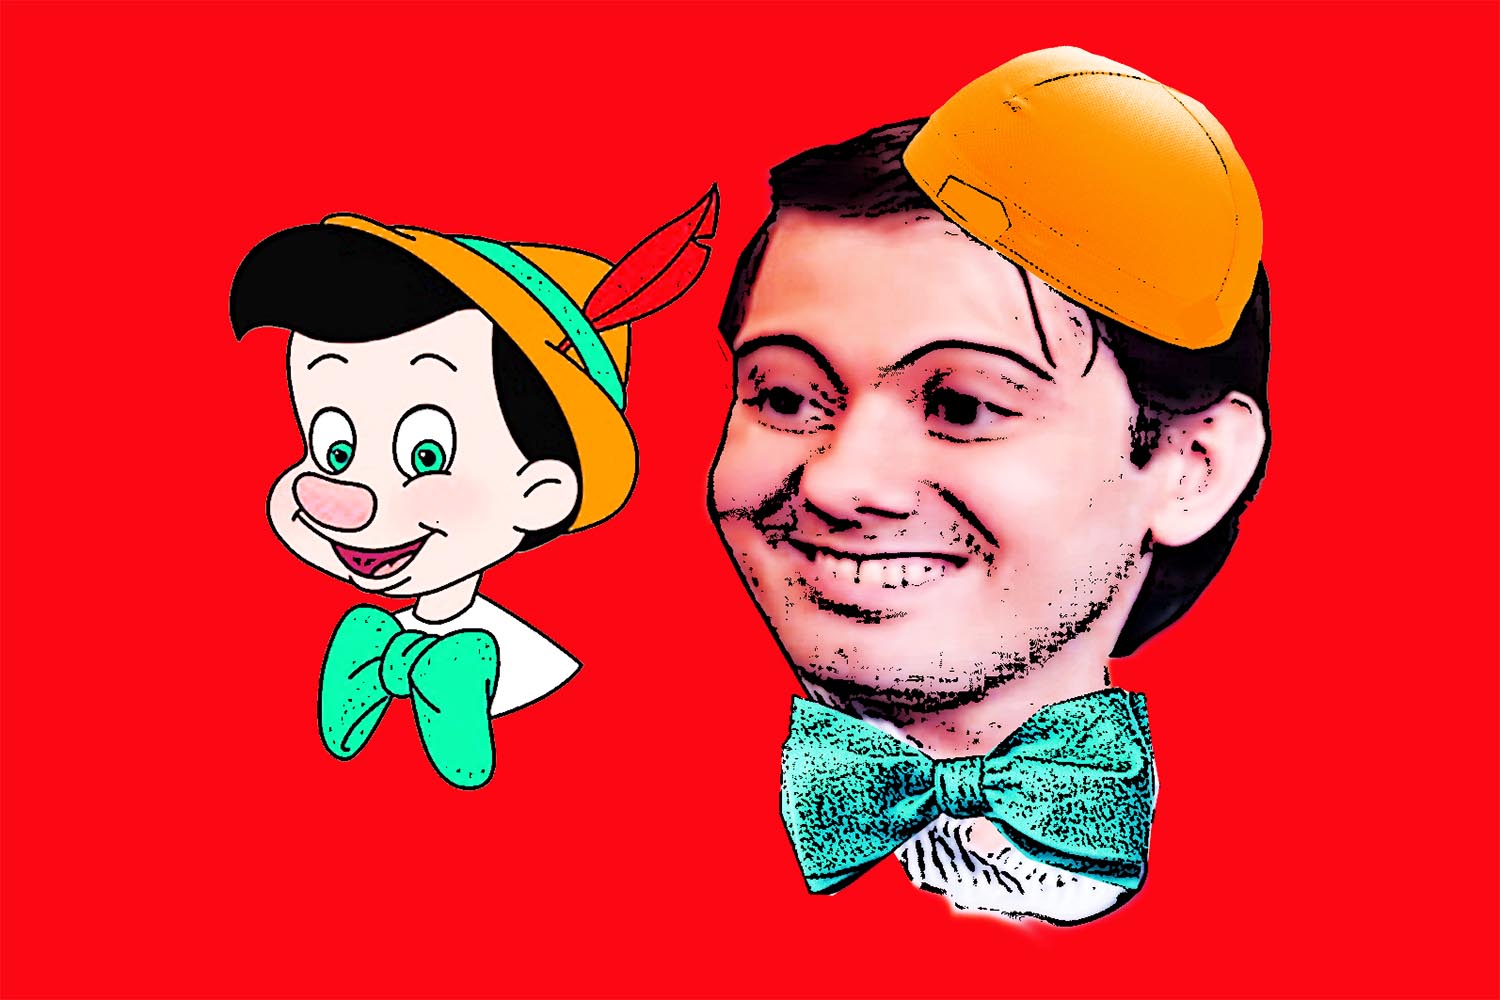 9. Pinocchio 5